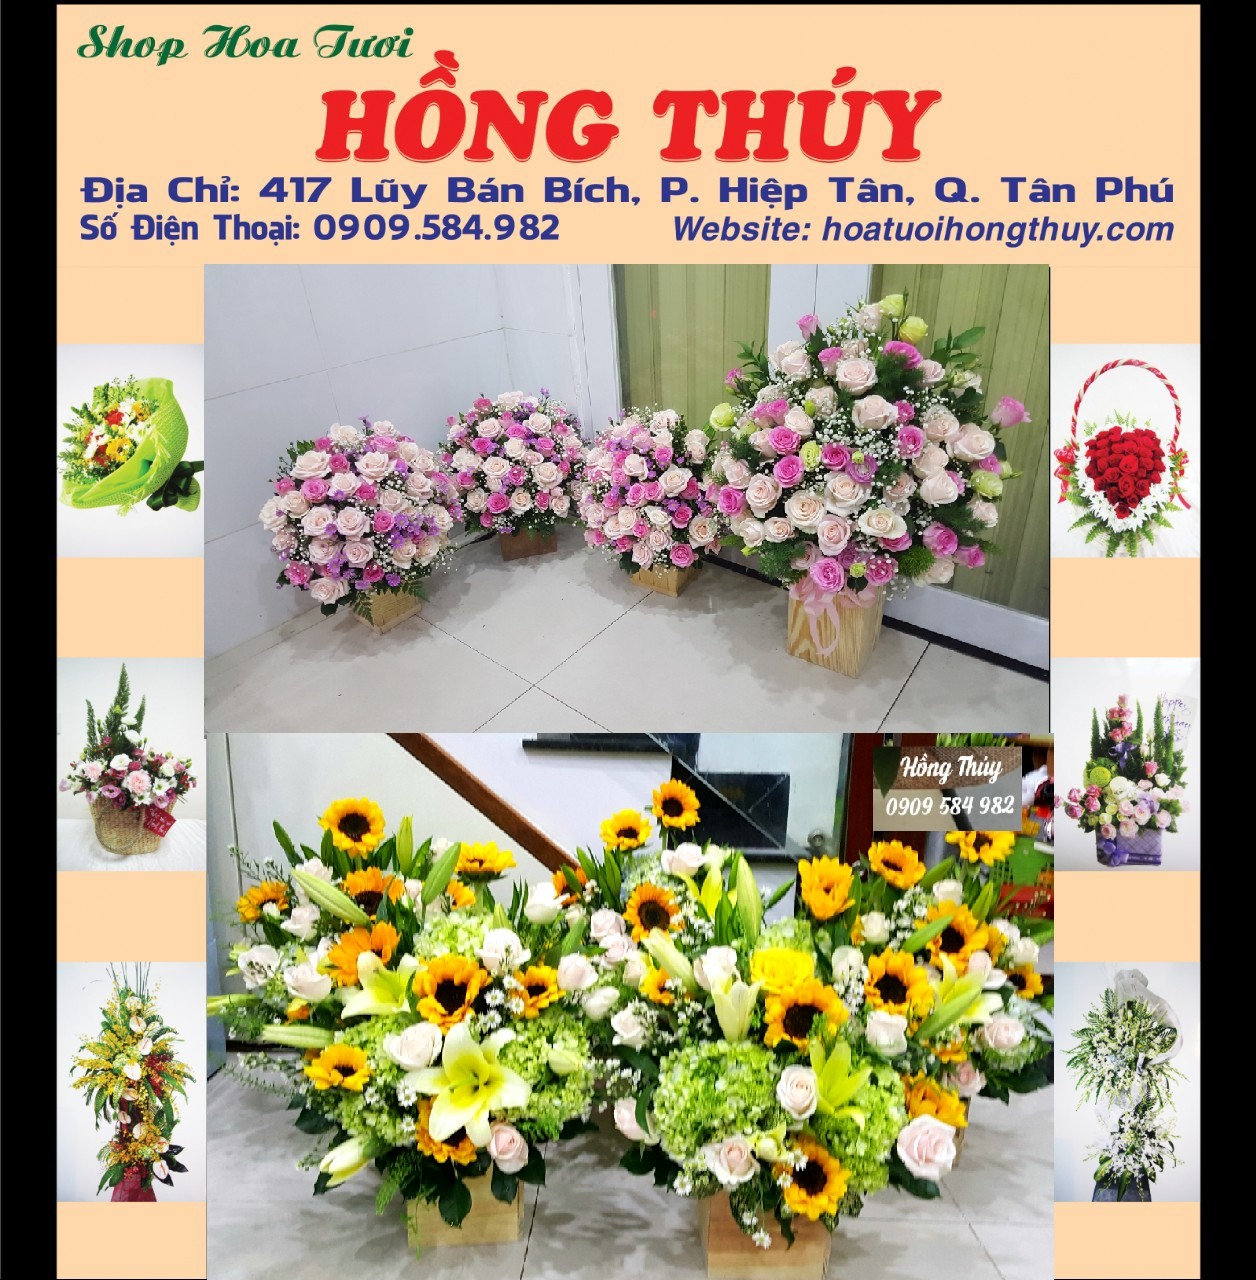 Shop hoa tươi Hồng Thúy quận Tân Phú